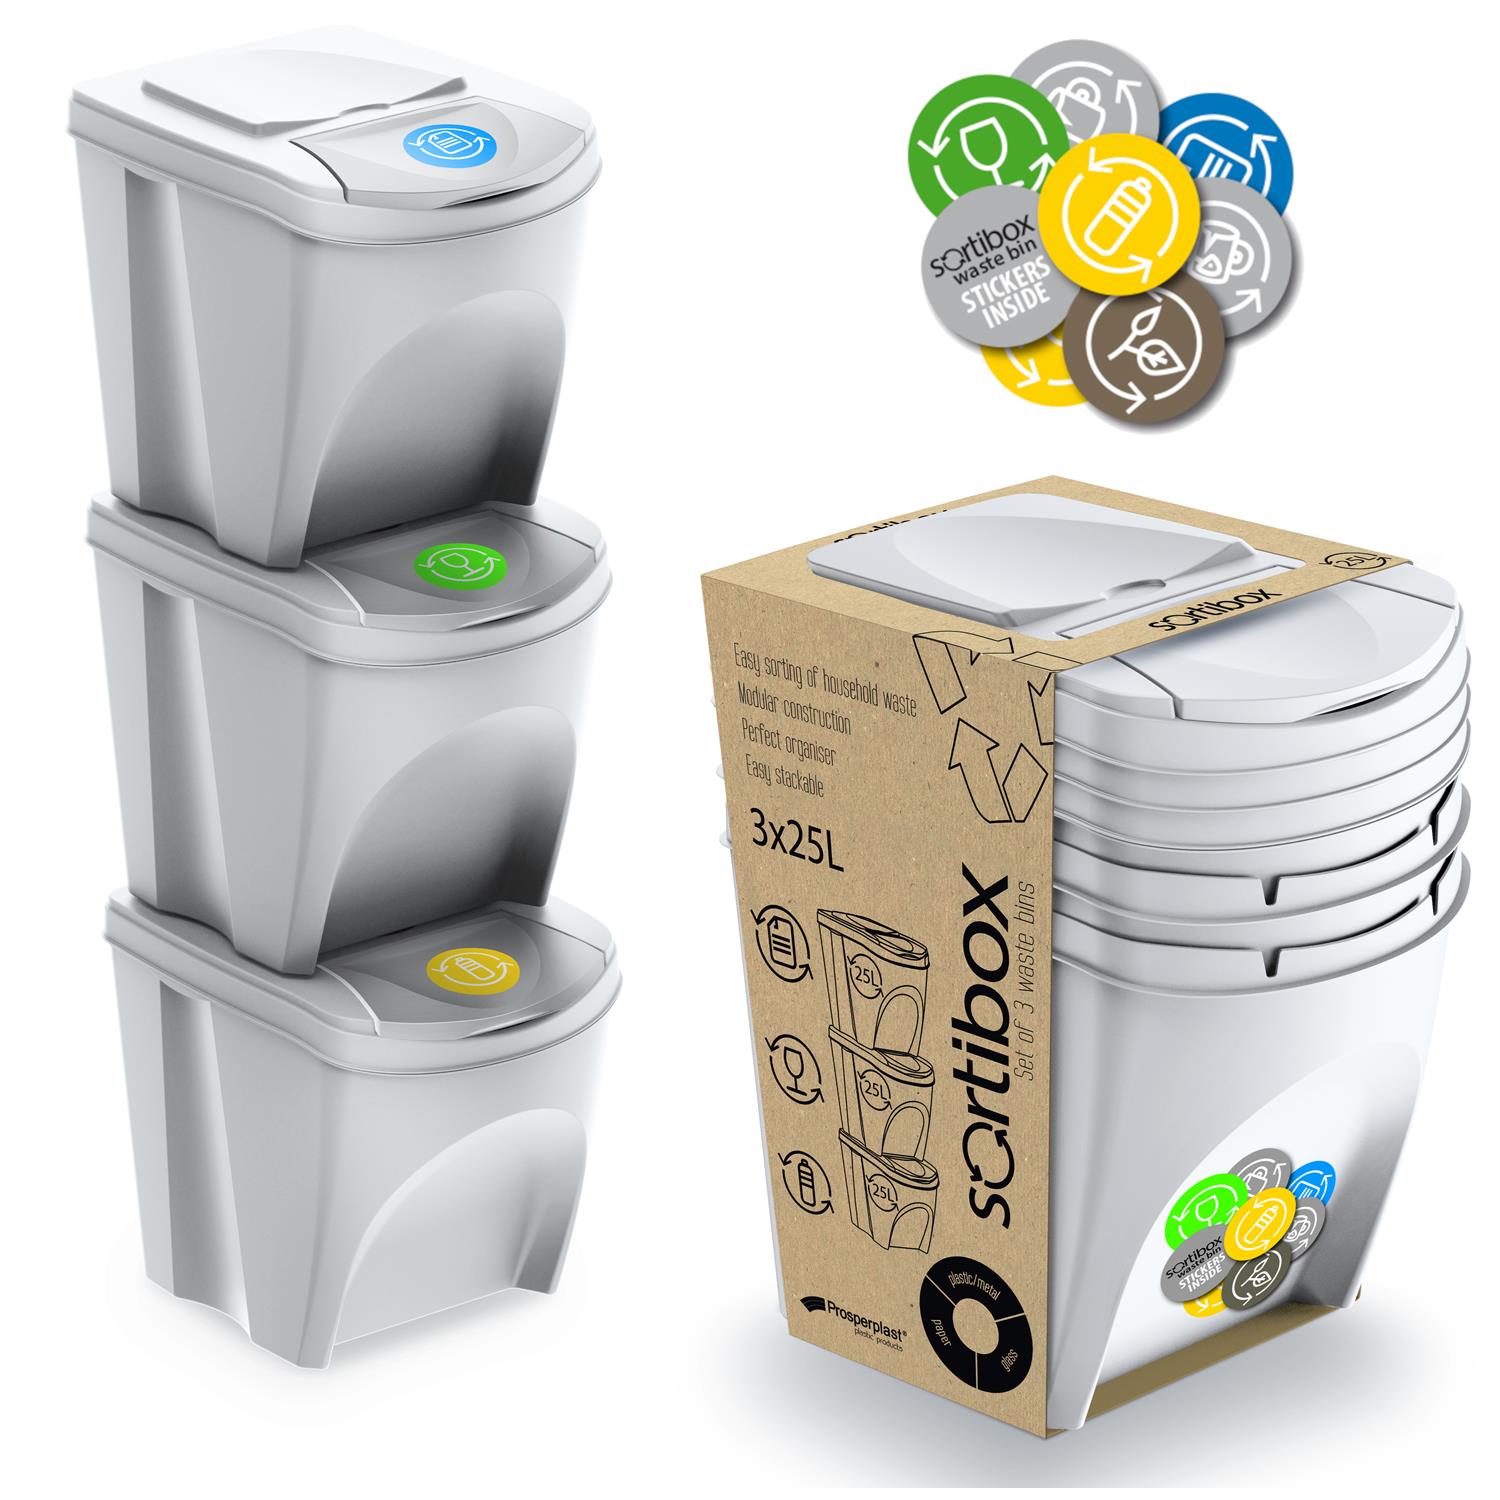 Sortierbox Set 3 Eimer 3x25L grau  Mülltrennung Behälter Recycling mit Deckel 